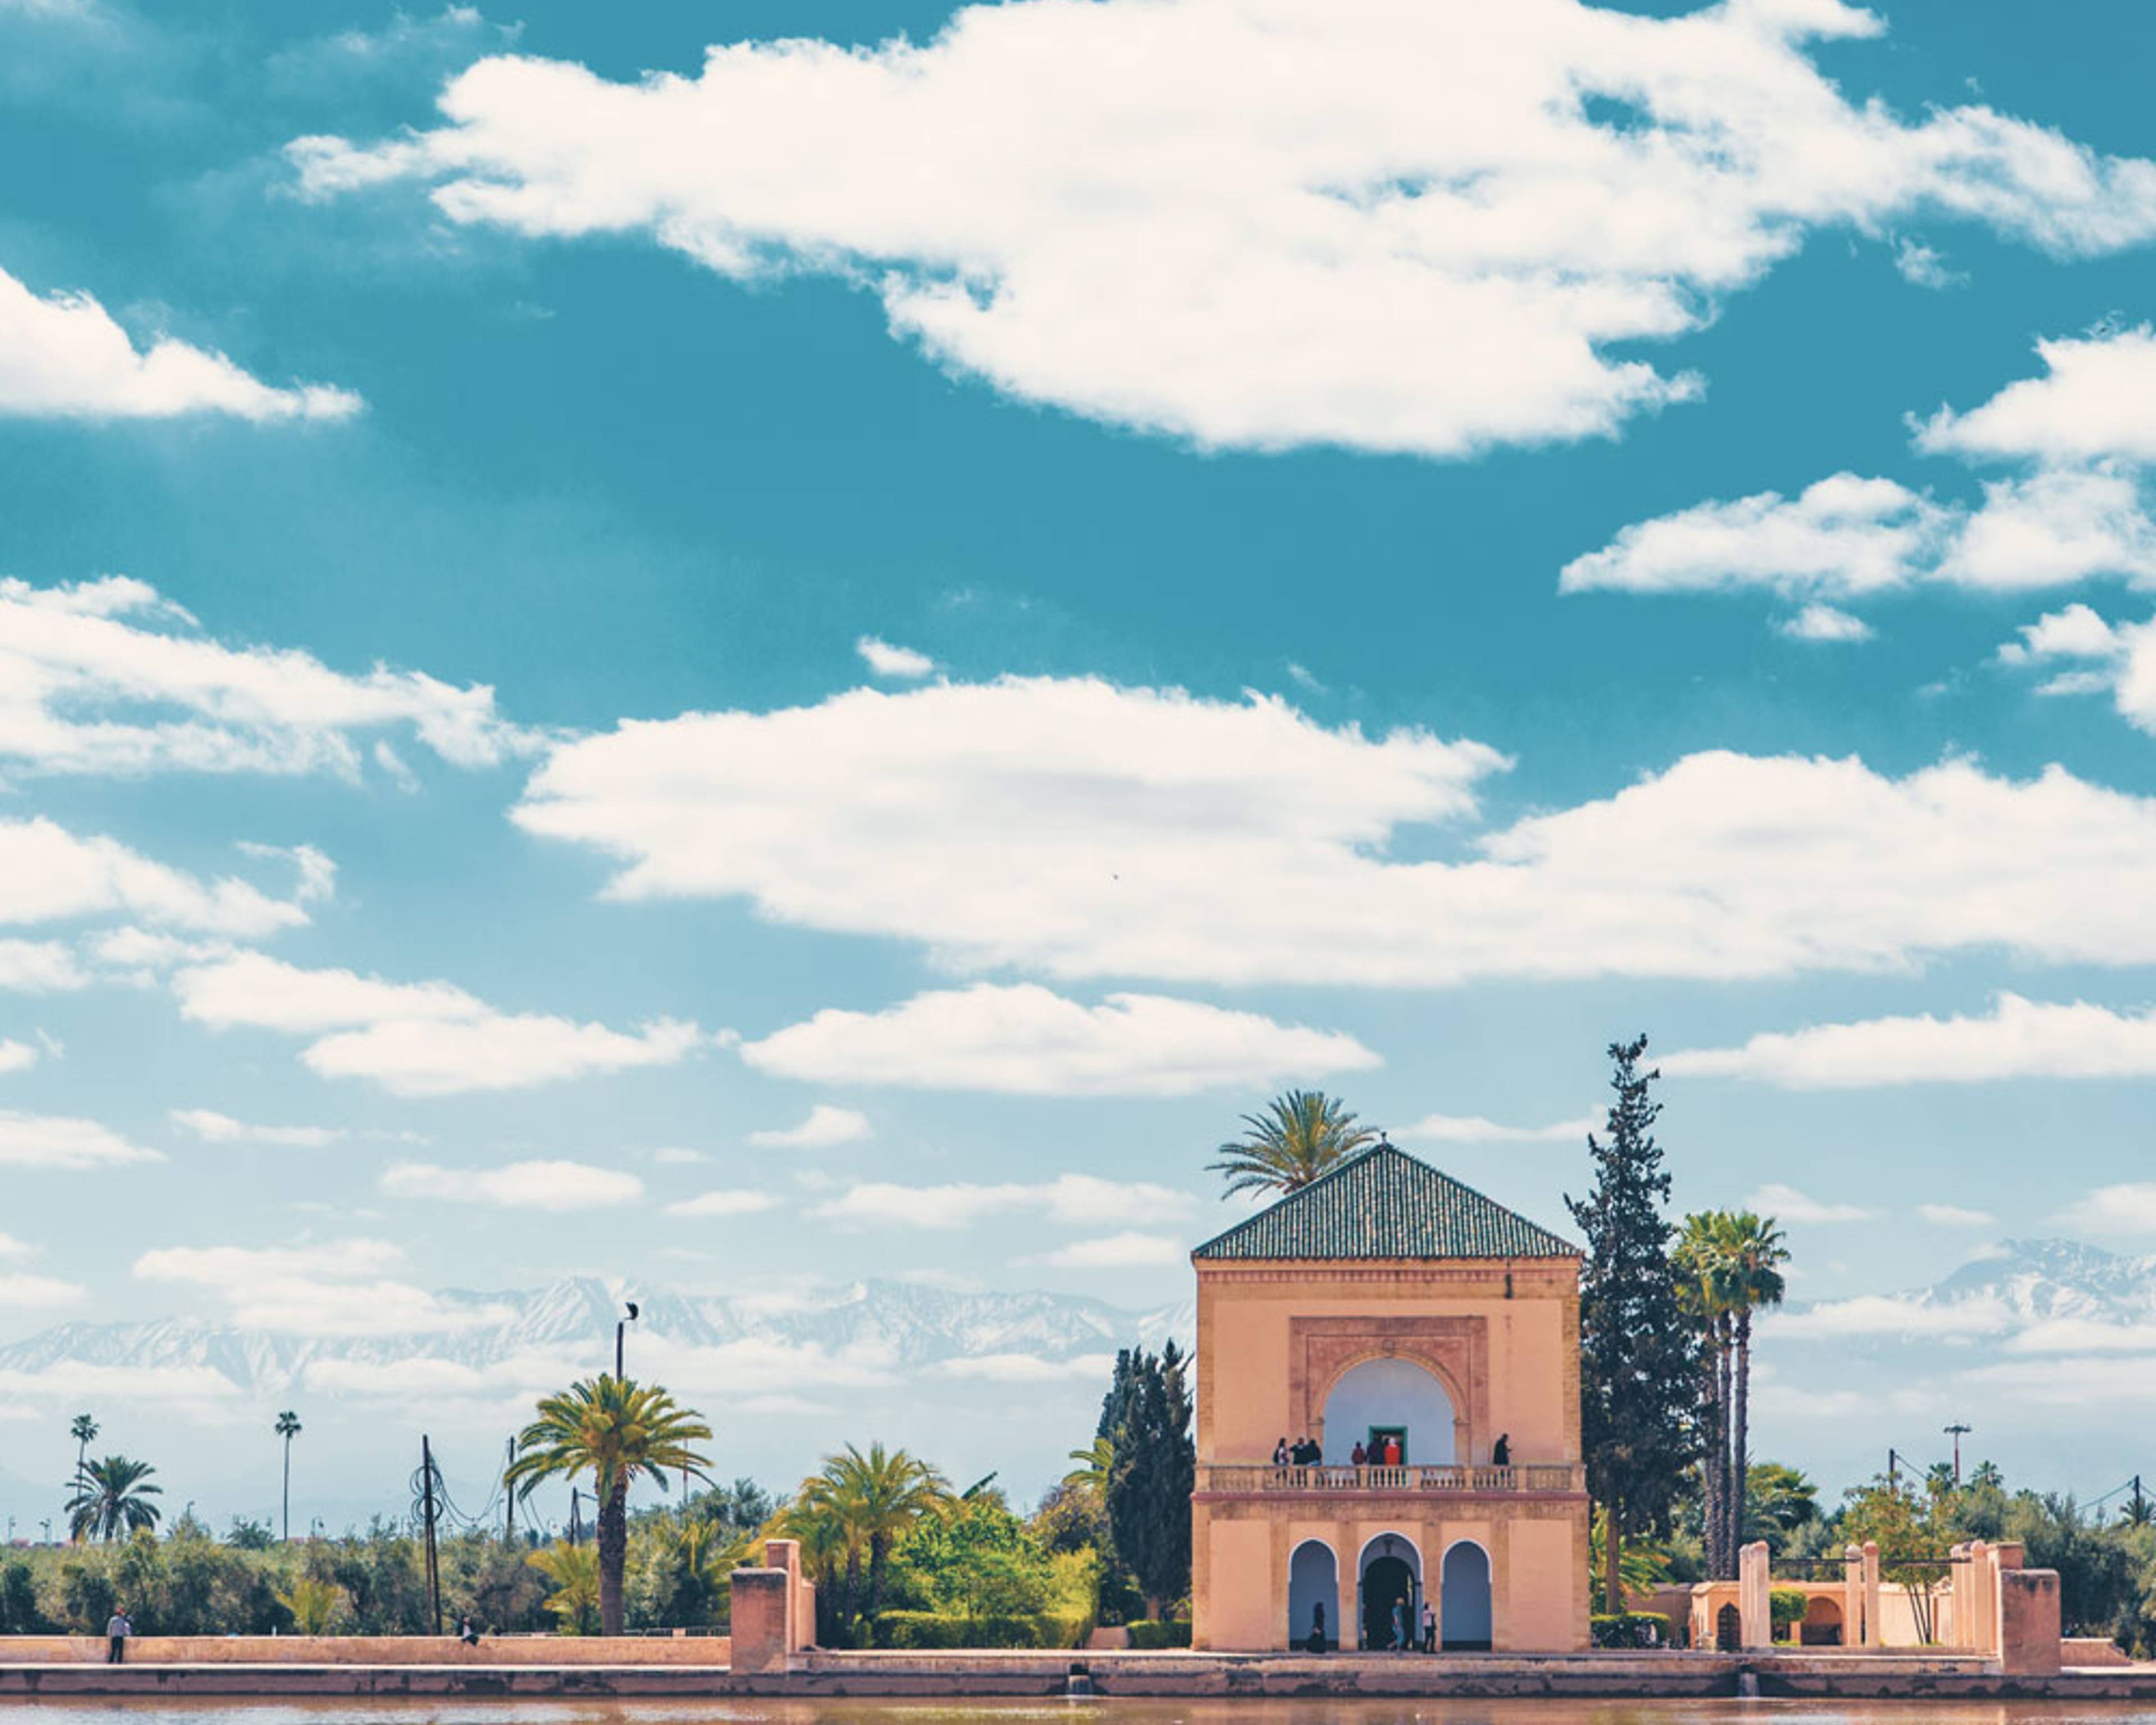 Uw op maat gemaakte zonvakantie en zomervakantie in Marokko